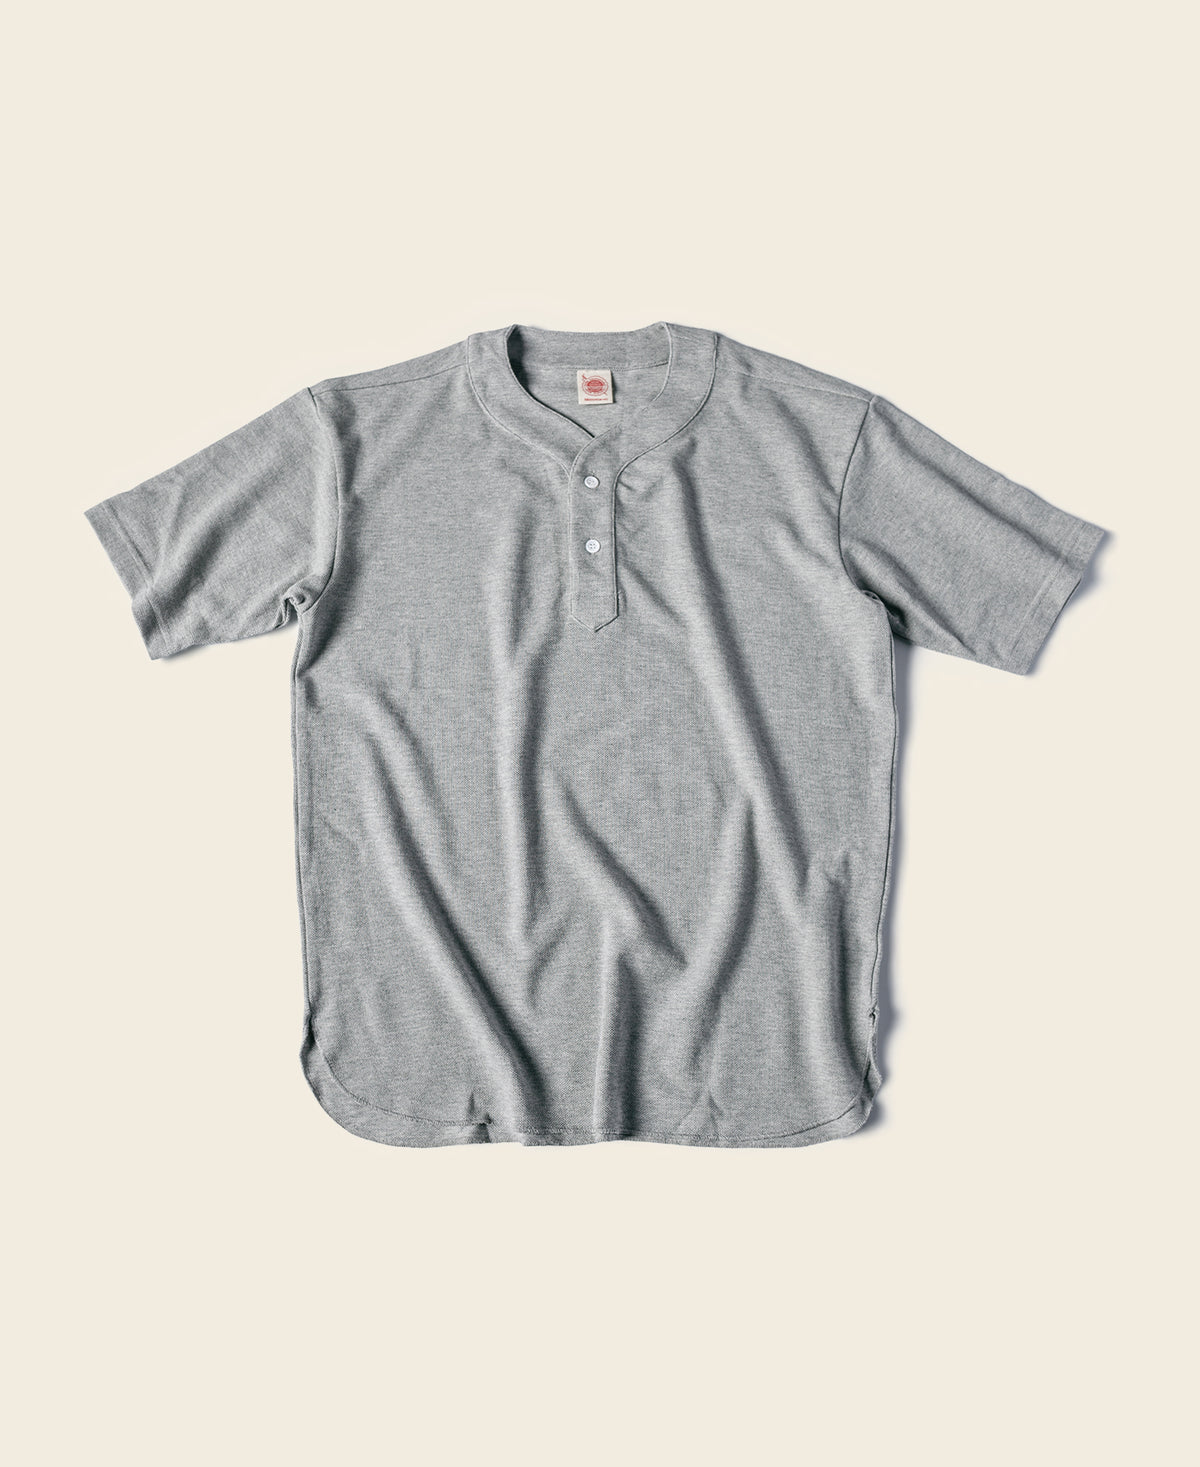 9.8 oz Cotton Pique Baseball T-Shirt - Gray